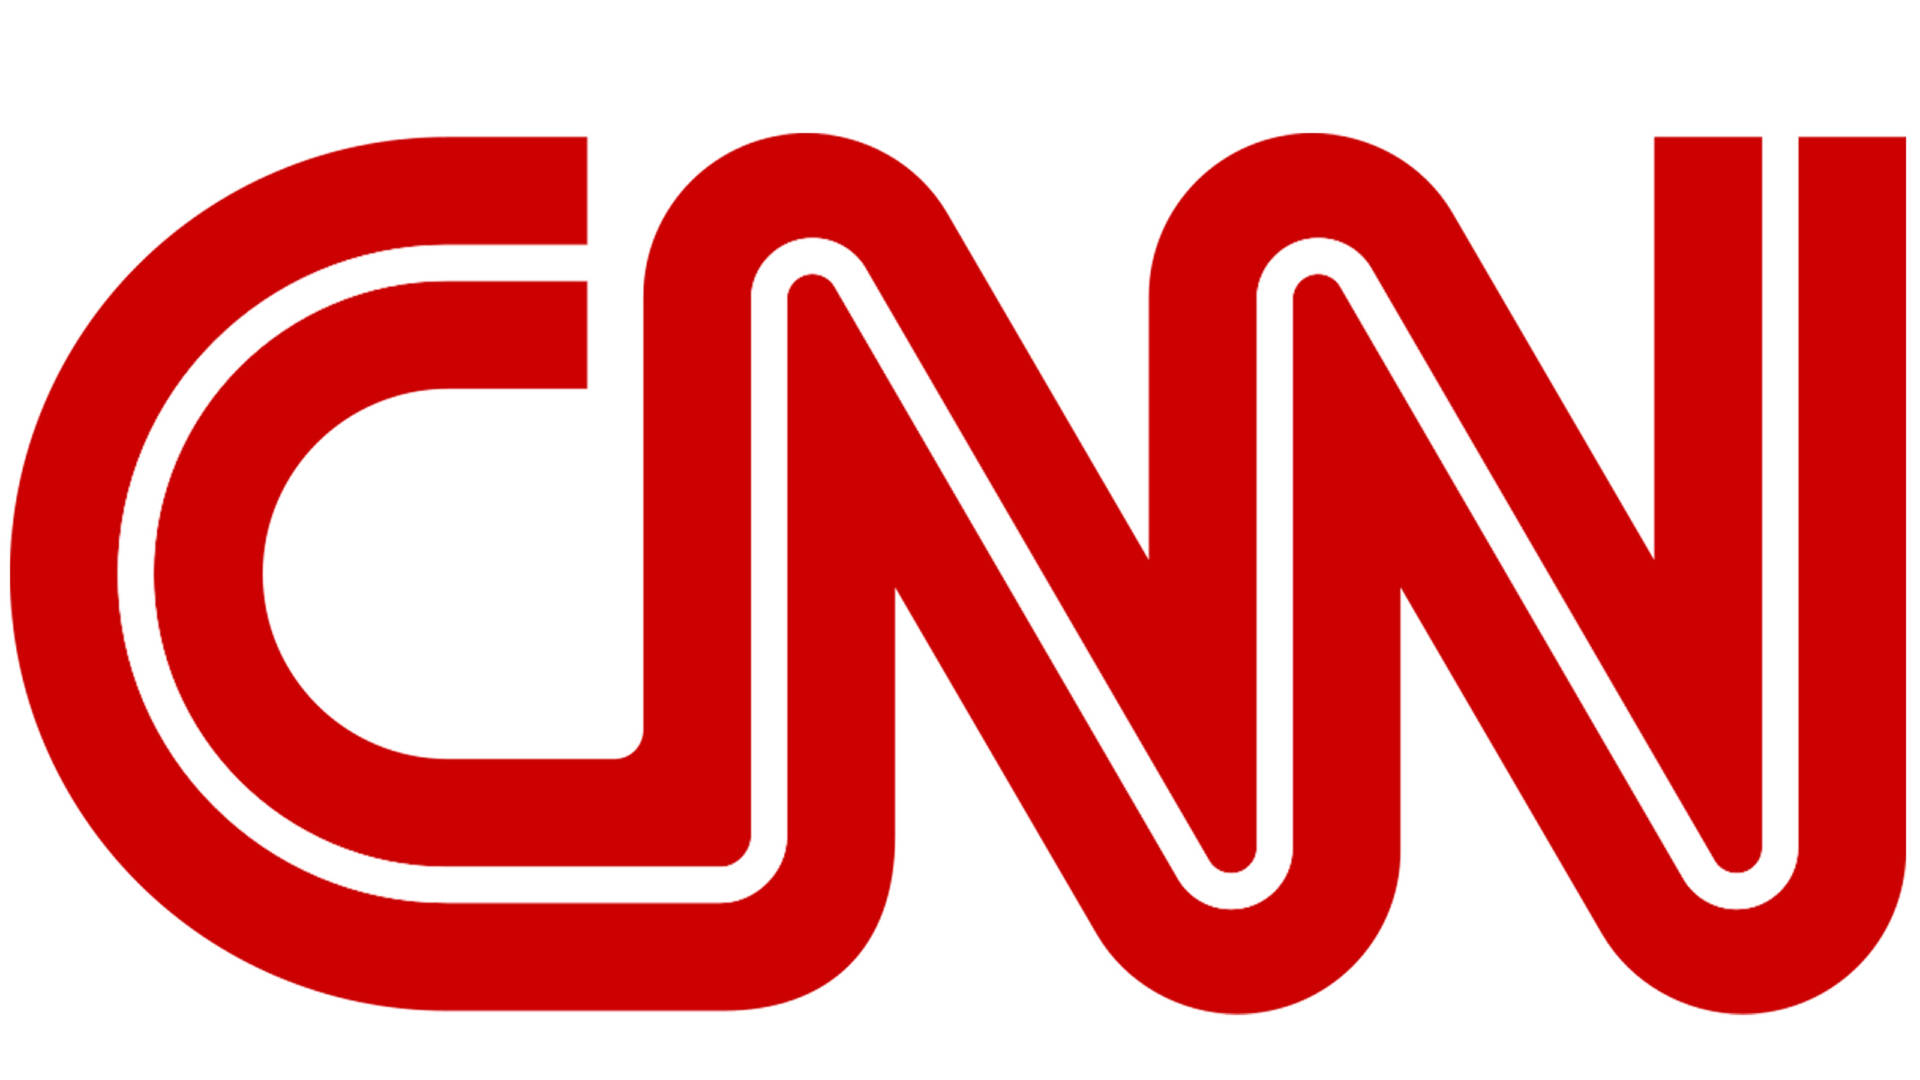 CNN News Channel Logo Wallpaper